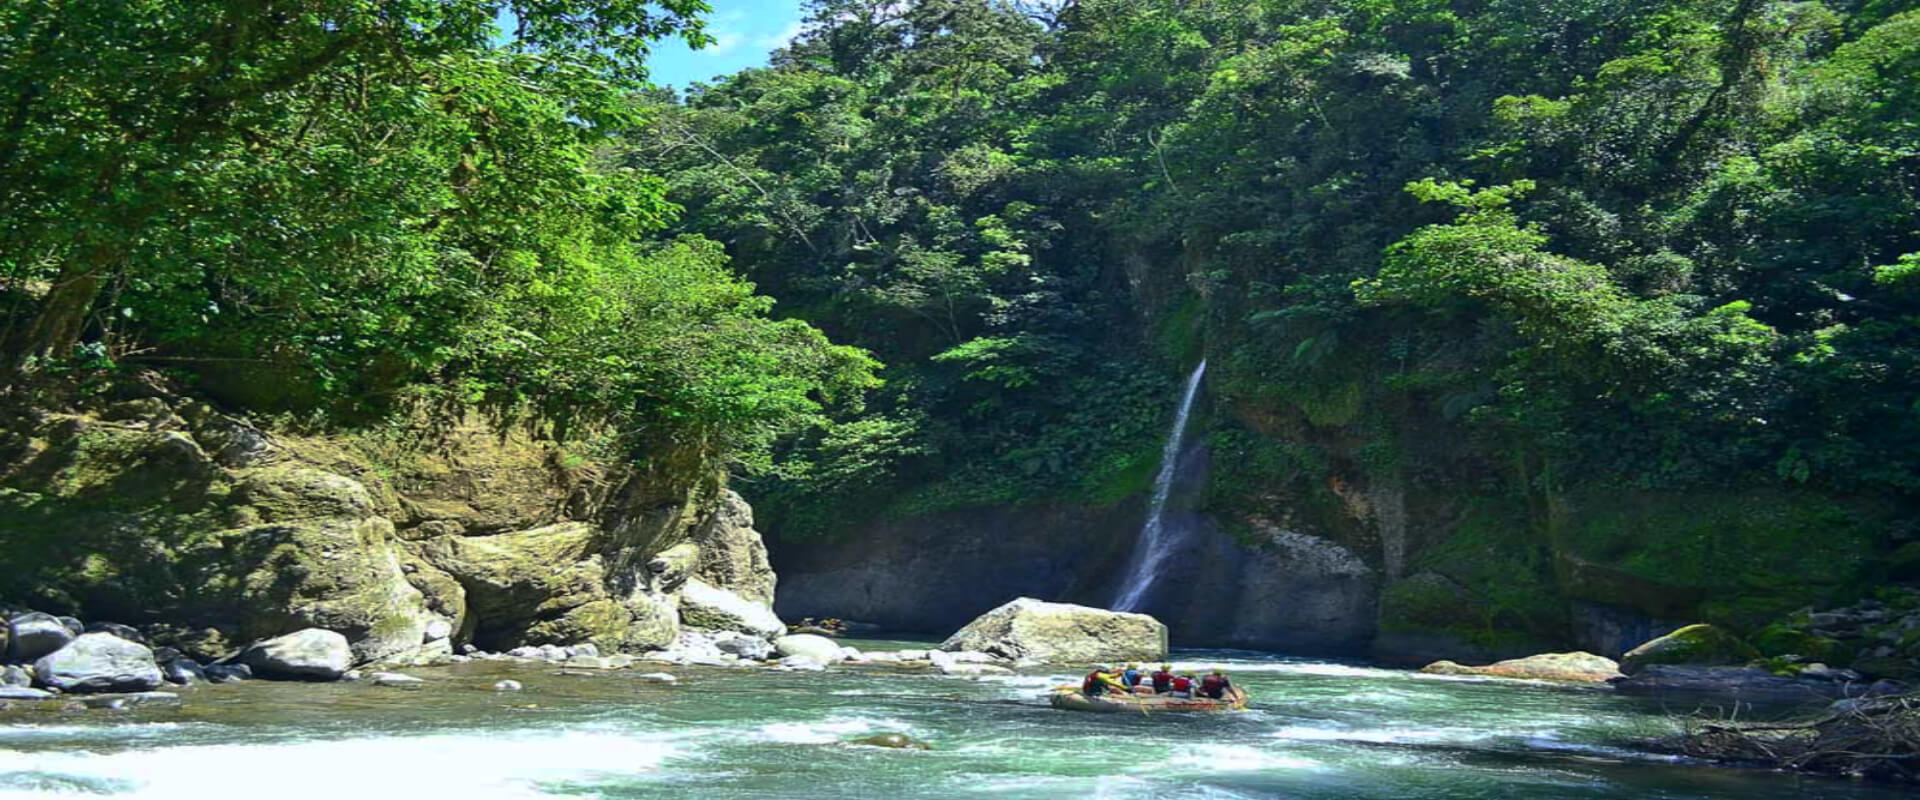 Rafting en Río Pacuare - 1 día | Costa Rica Jade Tours